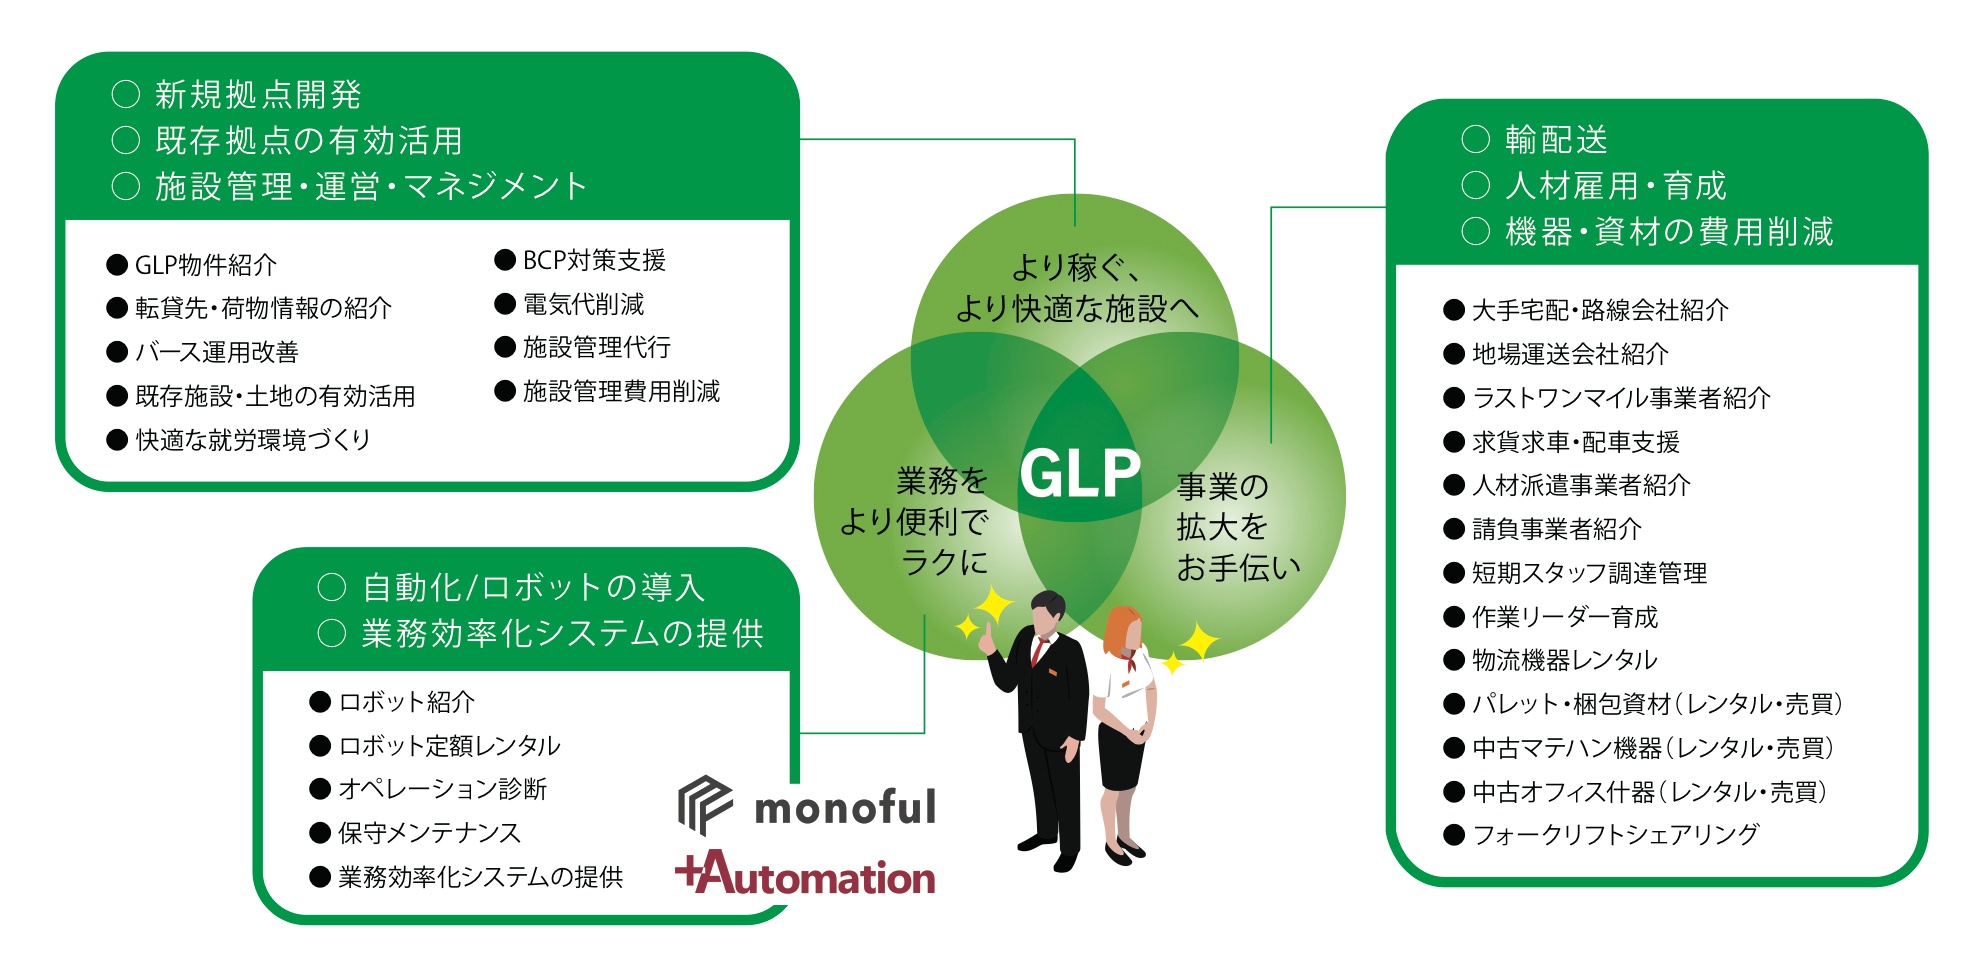 日本GLP×日研特集_GLPコンシェルジュの概略図